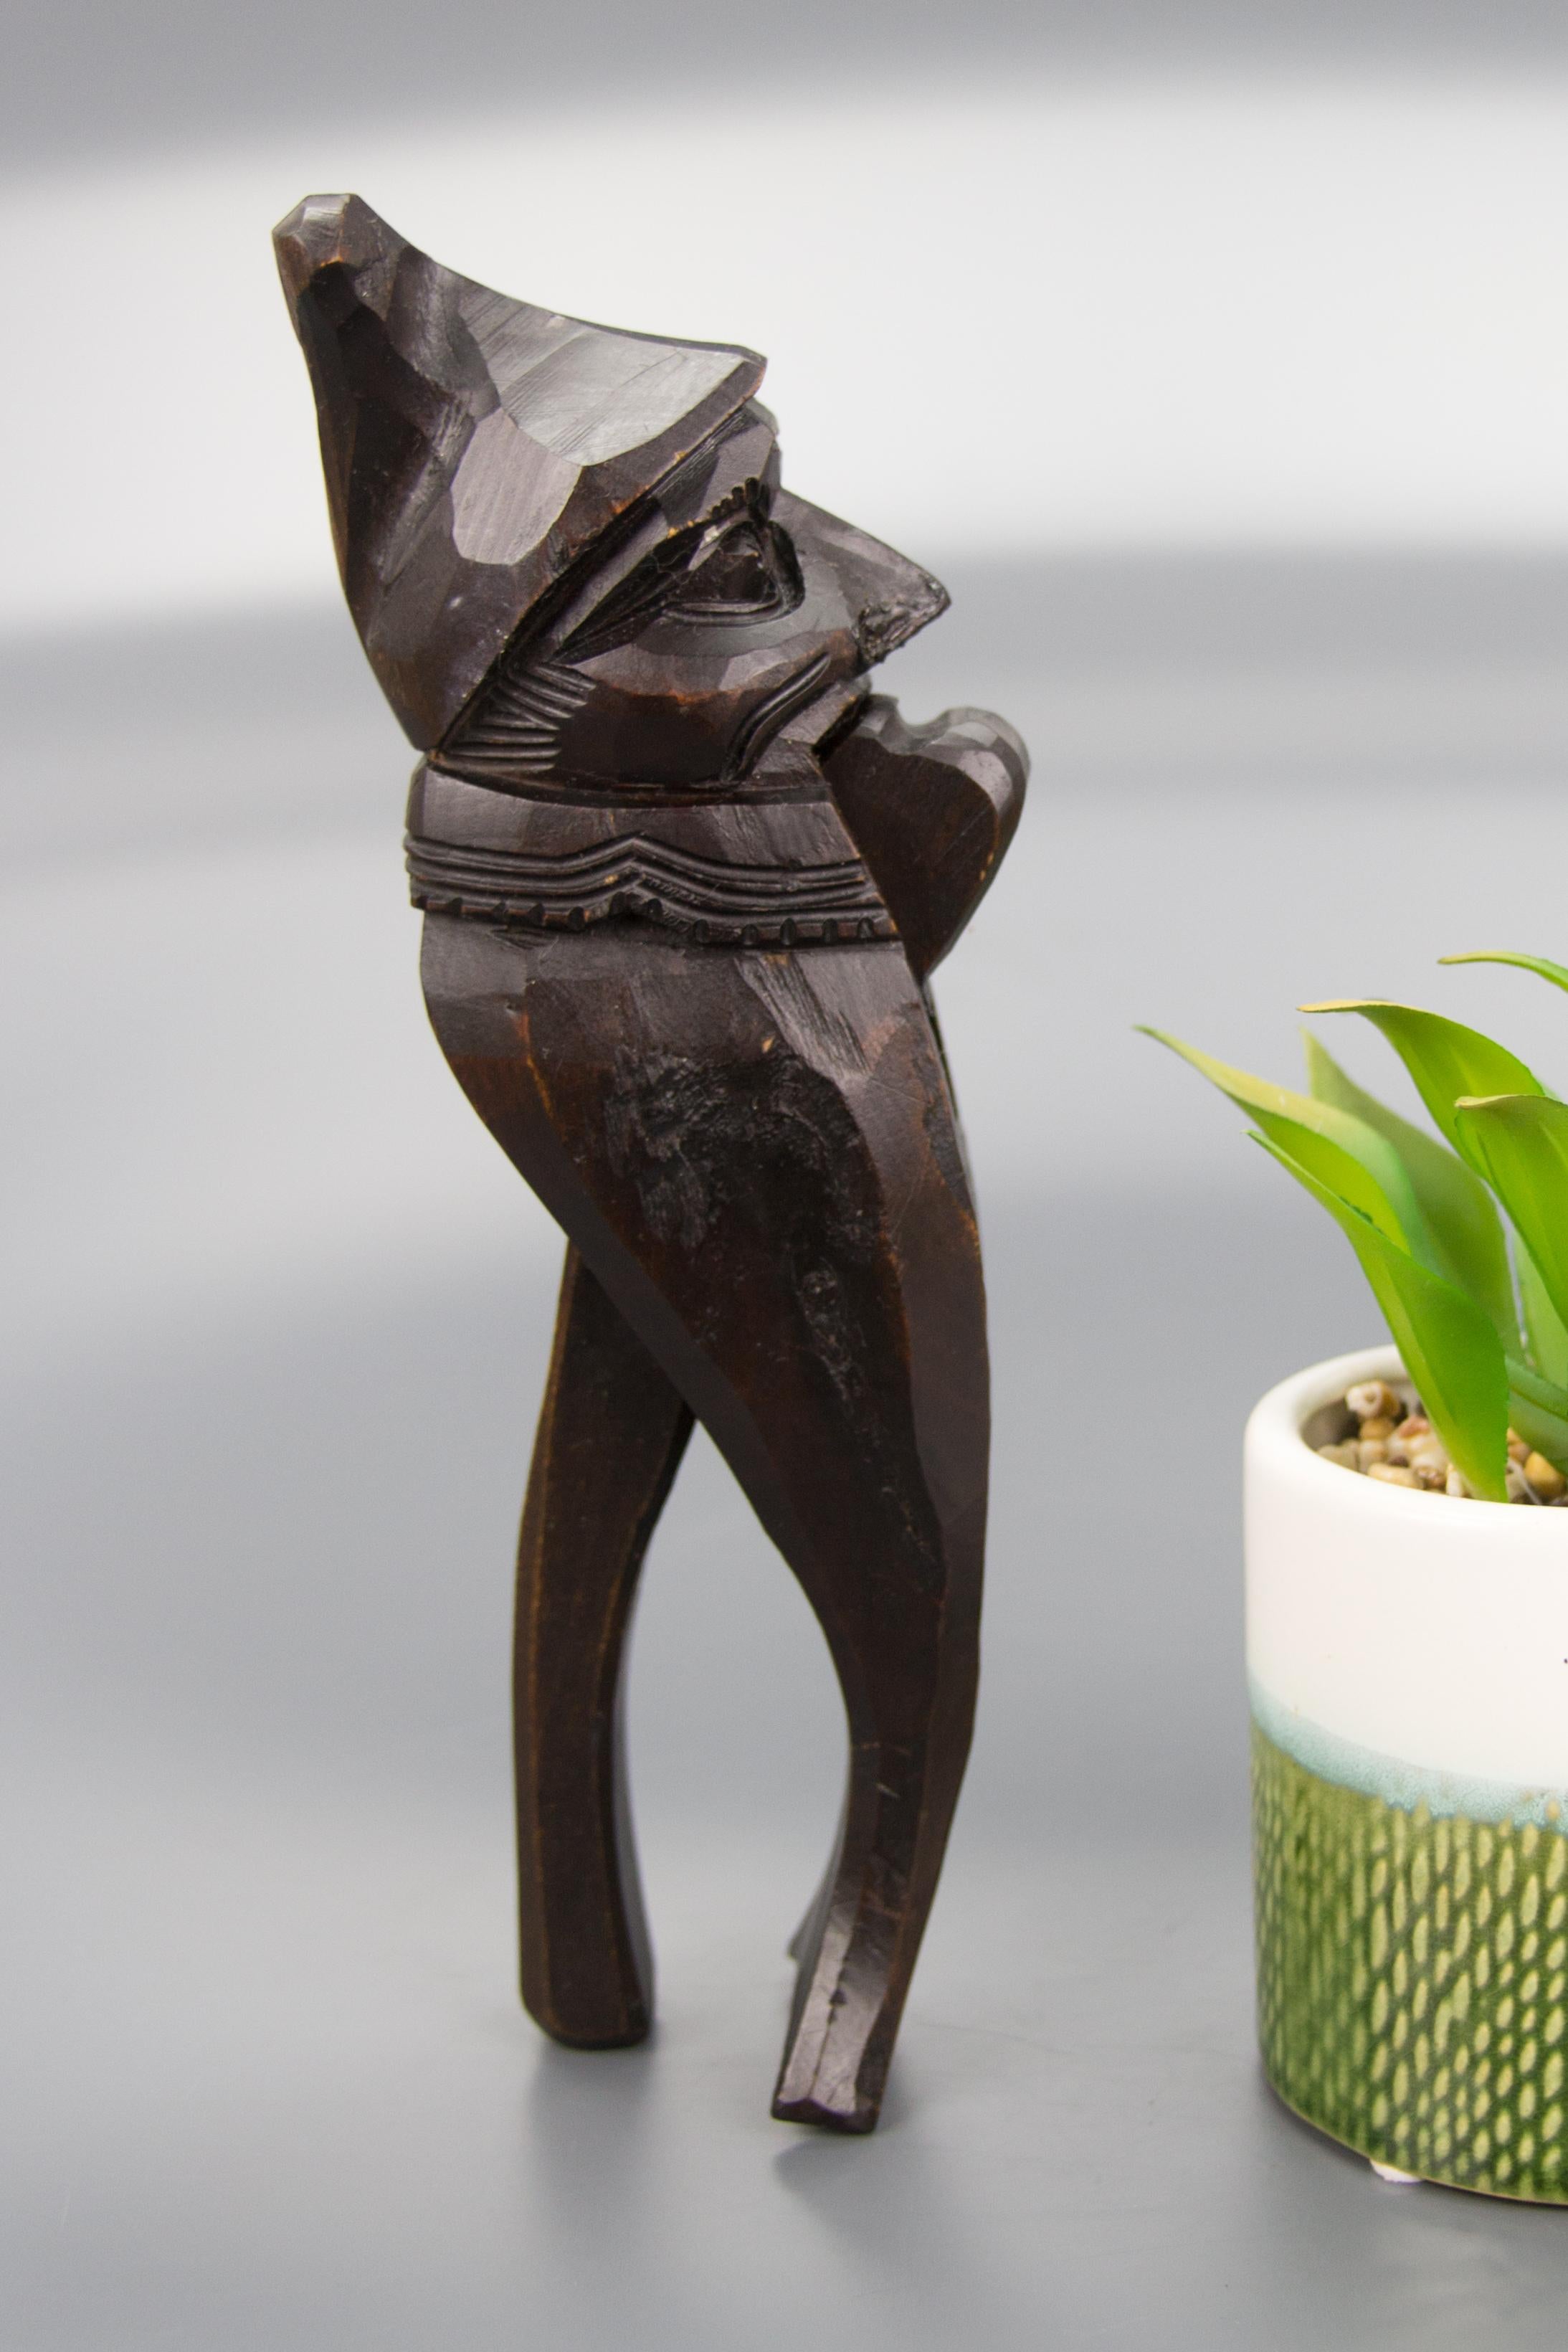 Ce magnifique casse-noix de style allemand de la Forêt-Noire est décoré d'une sculpture de gnome réalisée à la main. Sa bouche s'ouvre et se ferme pour casser la noix.
Dimensions : hauteur 22 cm / 8.66 in, largeur 5 cm / 1.96 in, profondeur 7.5 cm